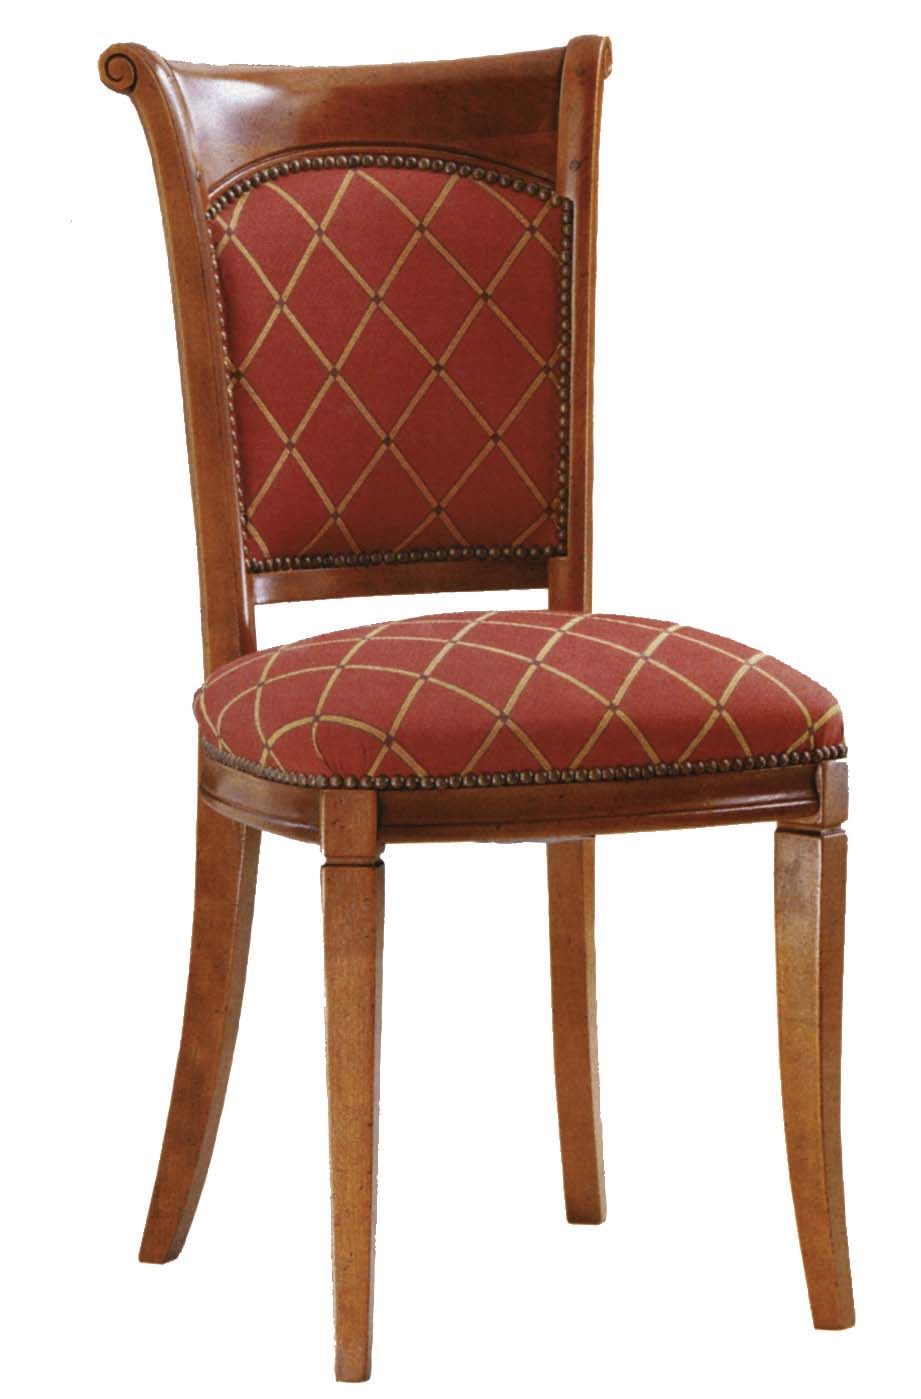 分享法国品牌Collinet 的几把椅子_036CB.jpg